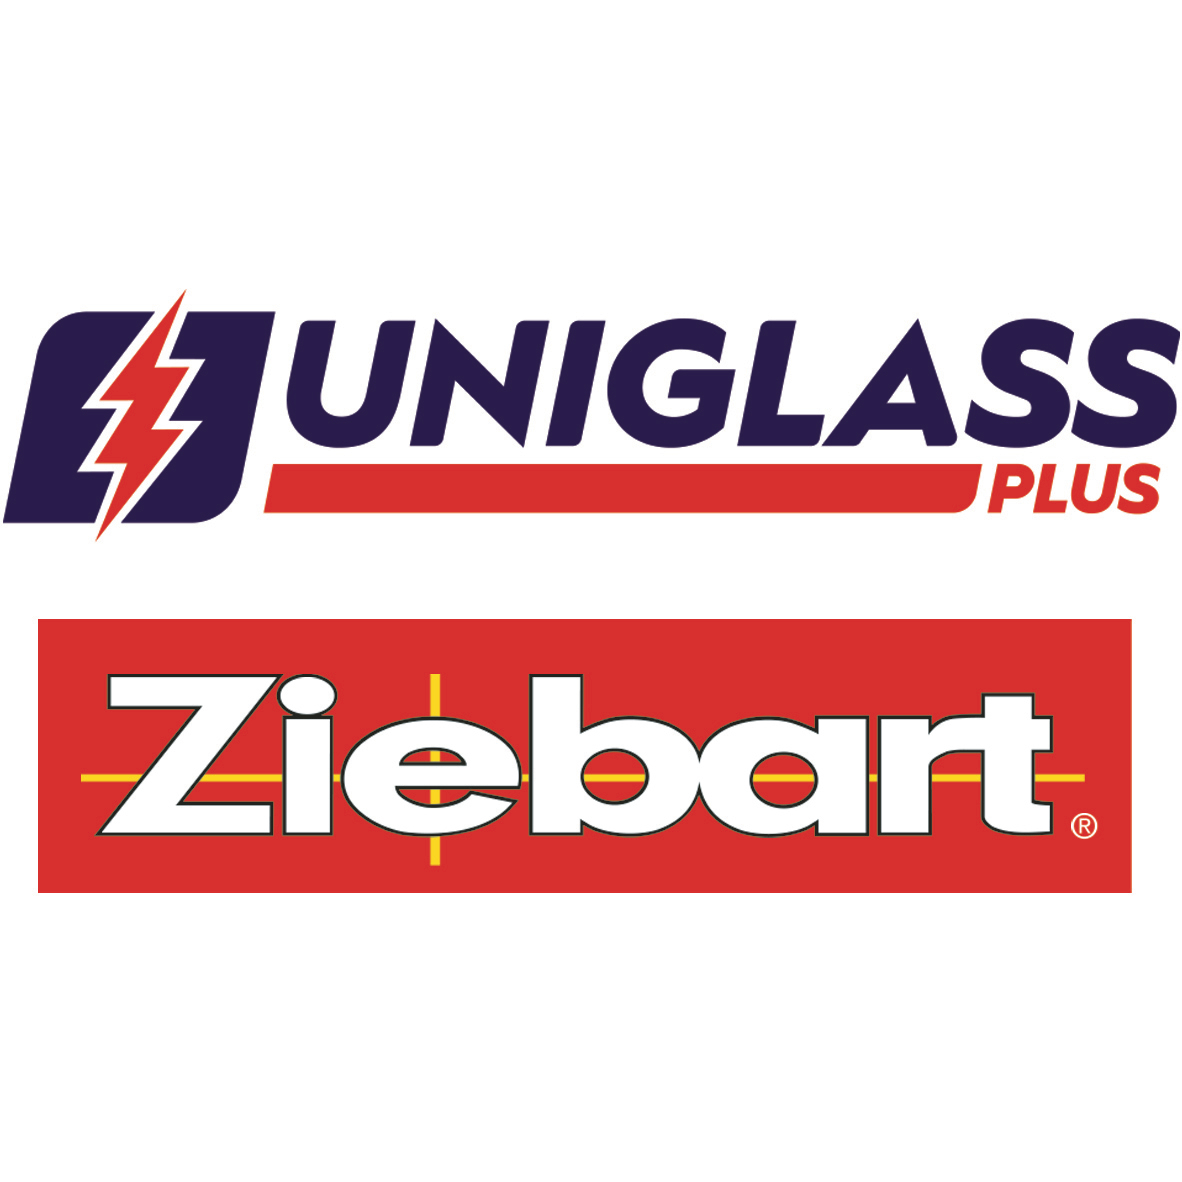 UniglassPlus / Ziebart - Pare-brises et vitres d'autos